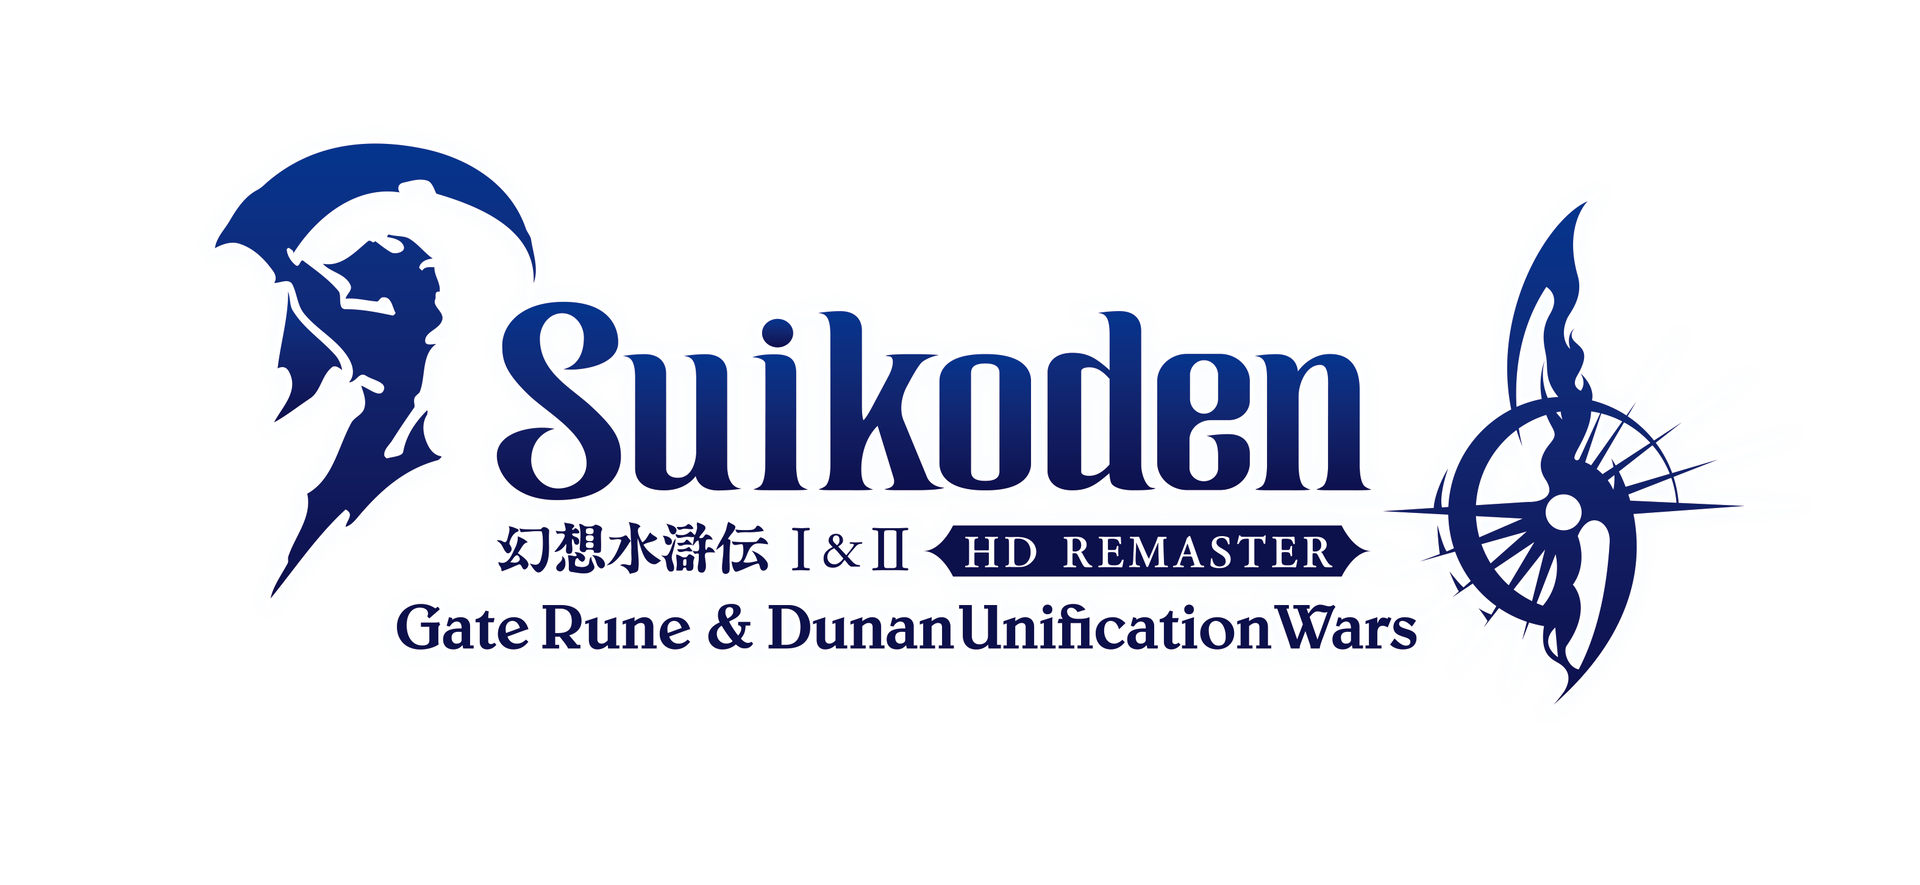 Suikoden I&II saranno disponibili in versione HD remaster nel 2023